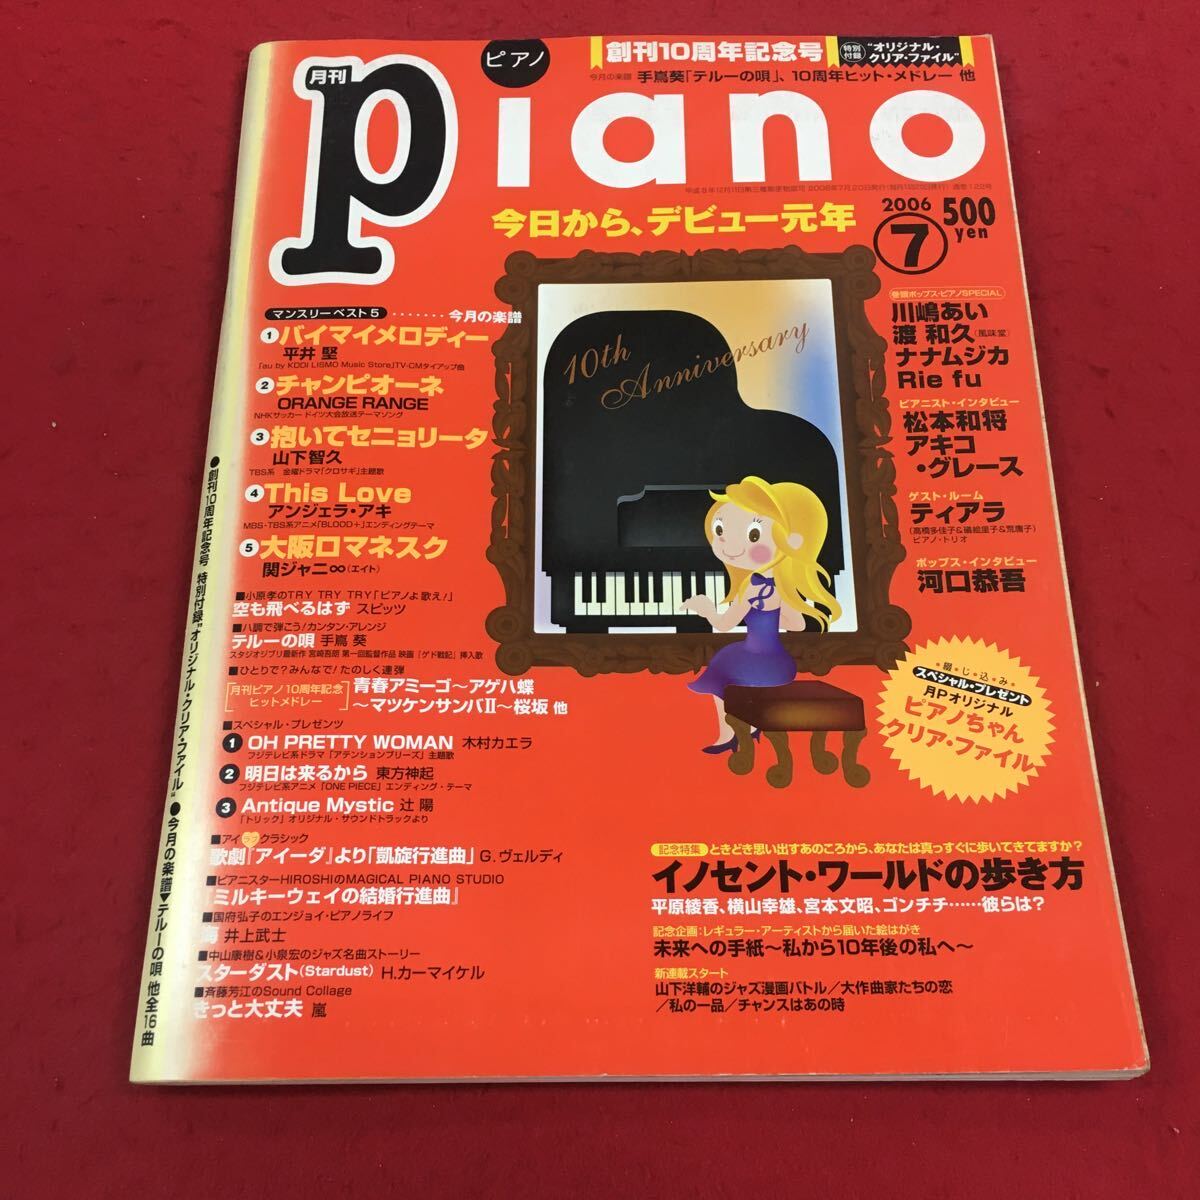 a-630※14 月刊ピアノ 2006年7月号 今月の楽譜 バイマイメロディー チャンピオーネ 抱いてセニョリータ …等 ヤマハミュージックメディア _表紙全体にややキズあり